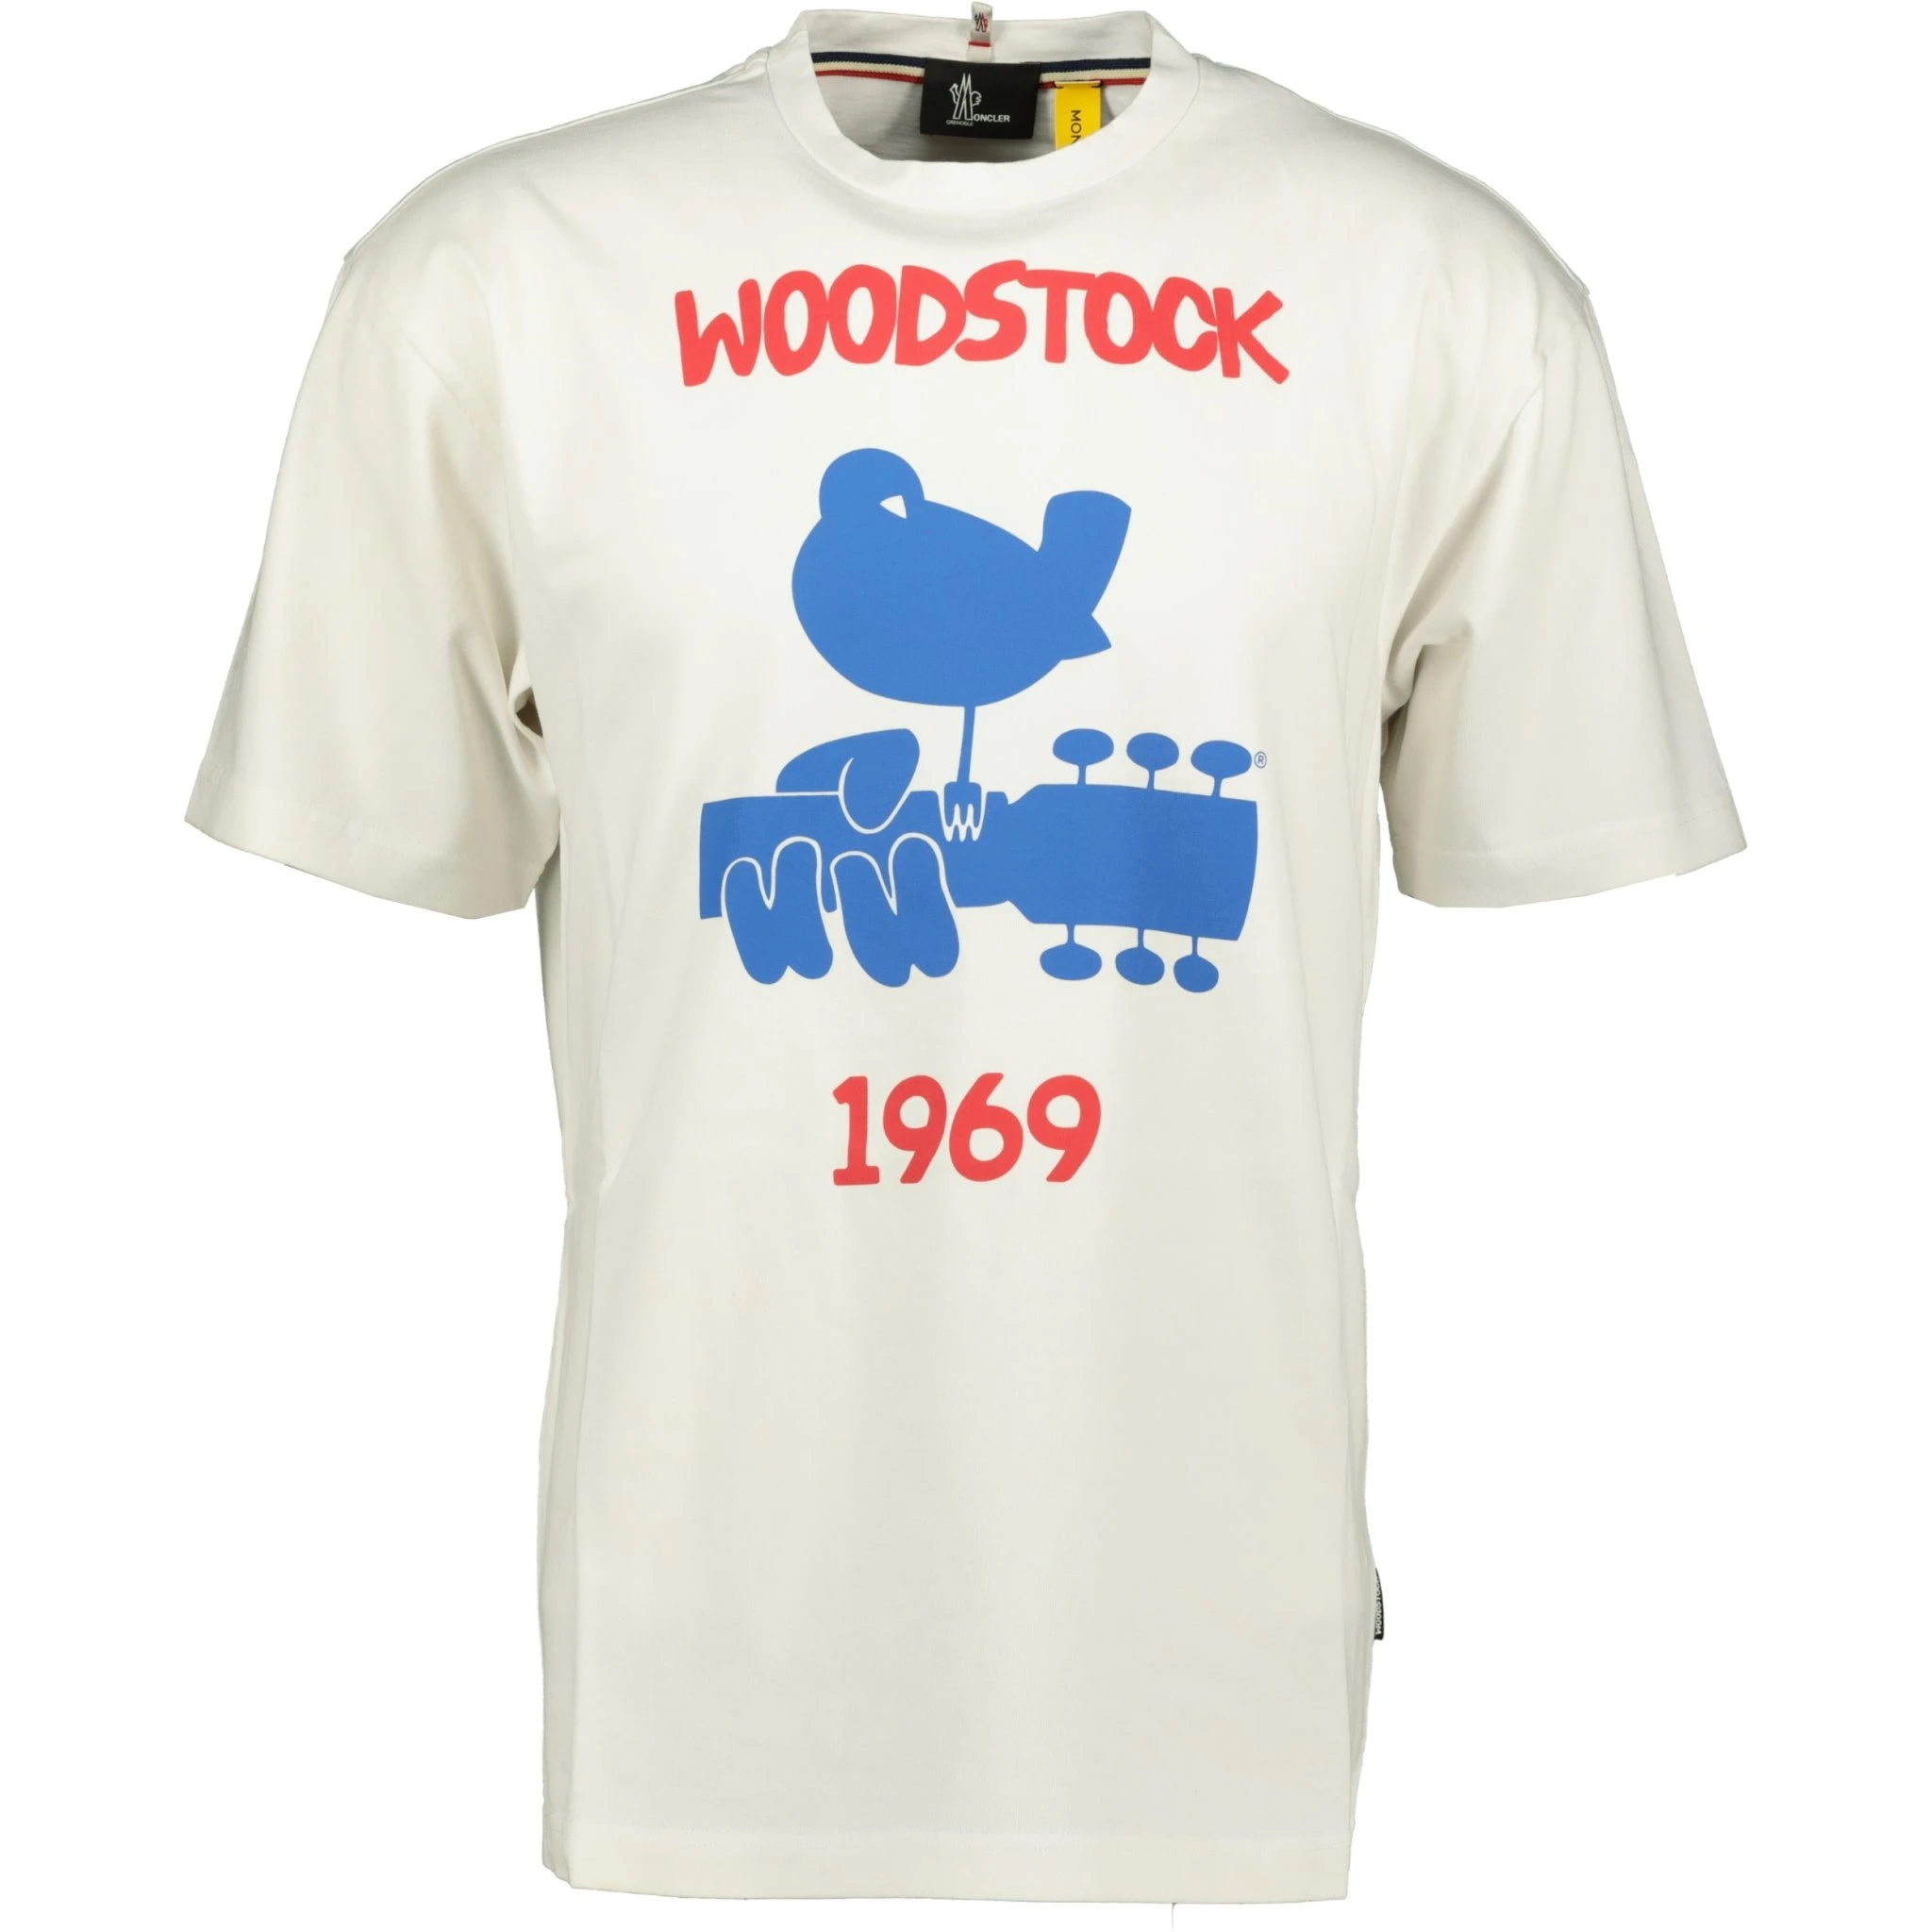 MONCLER Woodstock 1969 T-Shirt | eBay